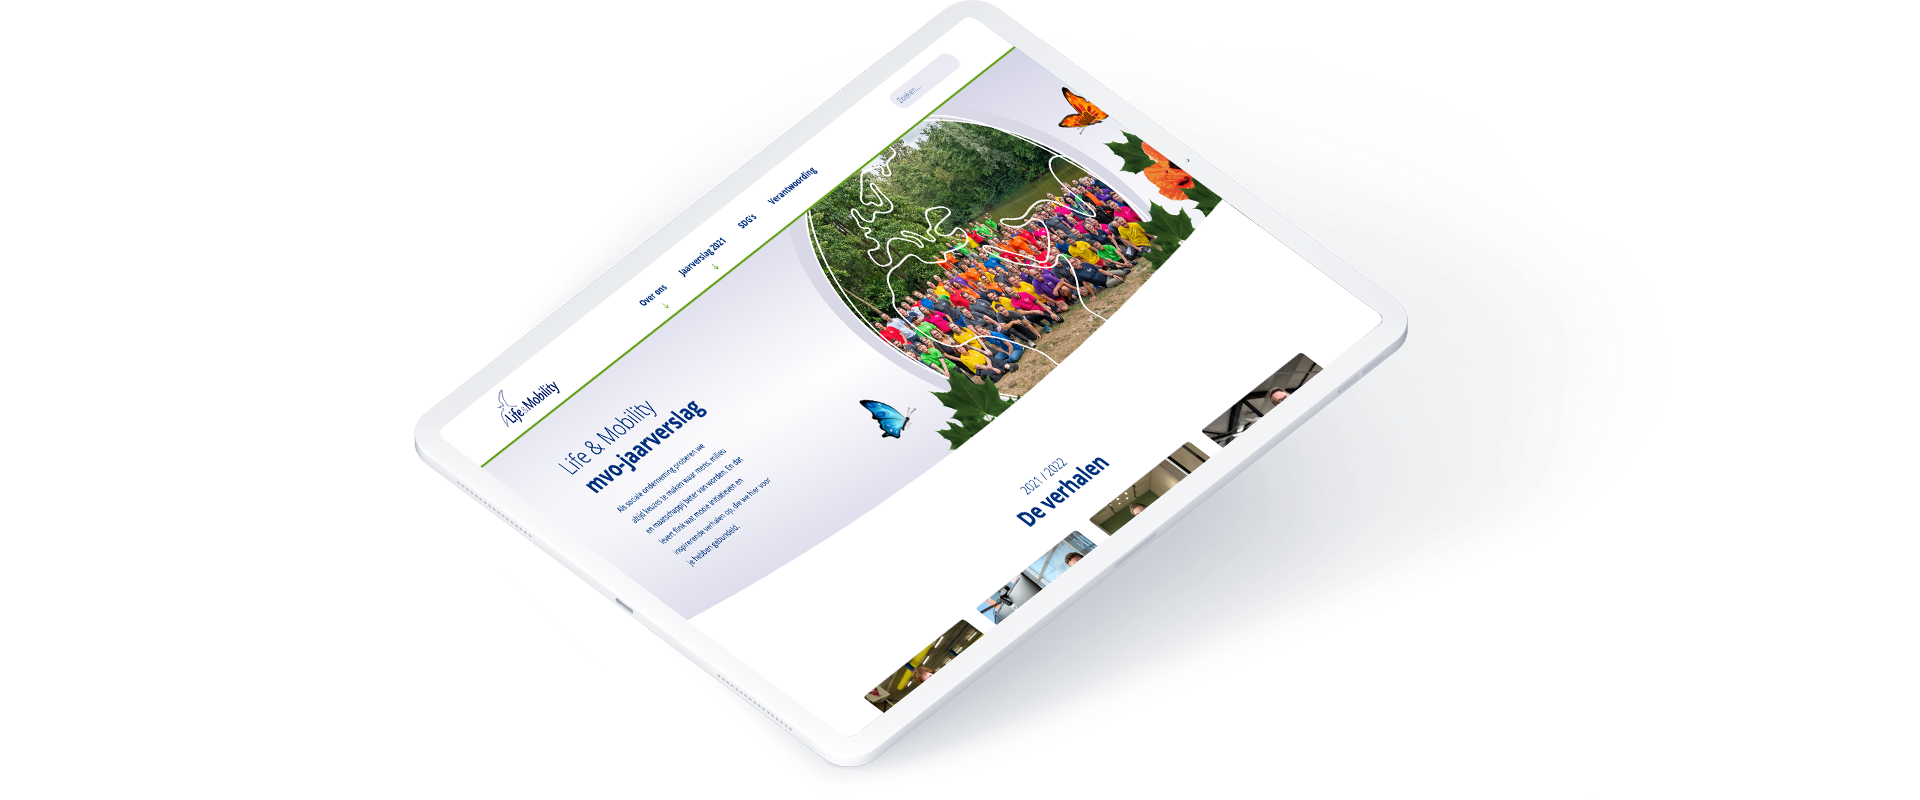 De MVO-website van Life & Mobility op de iPad